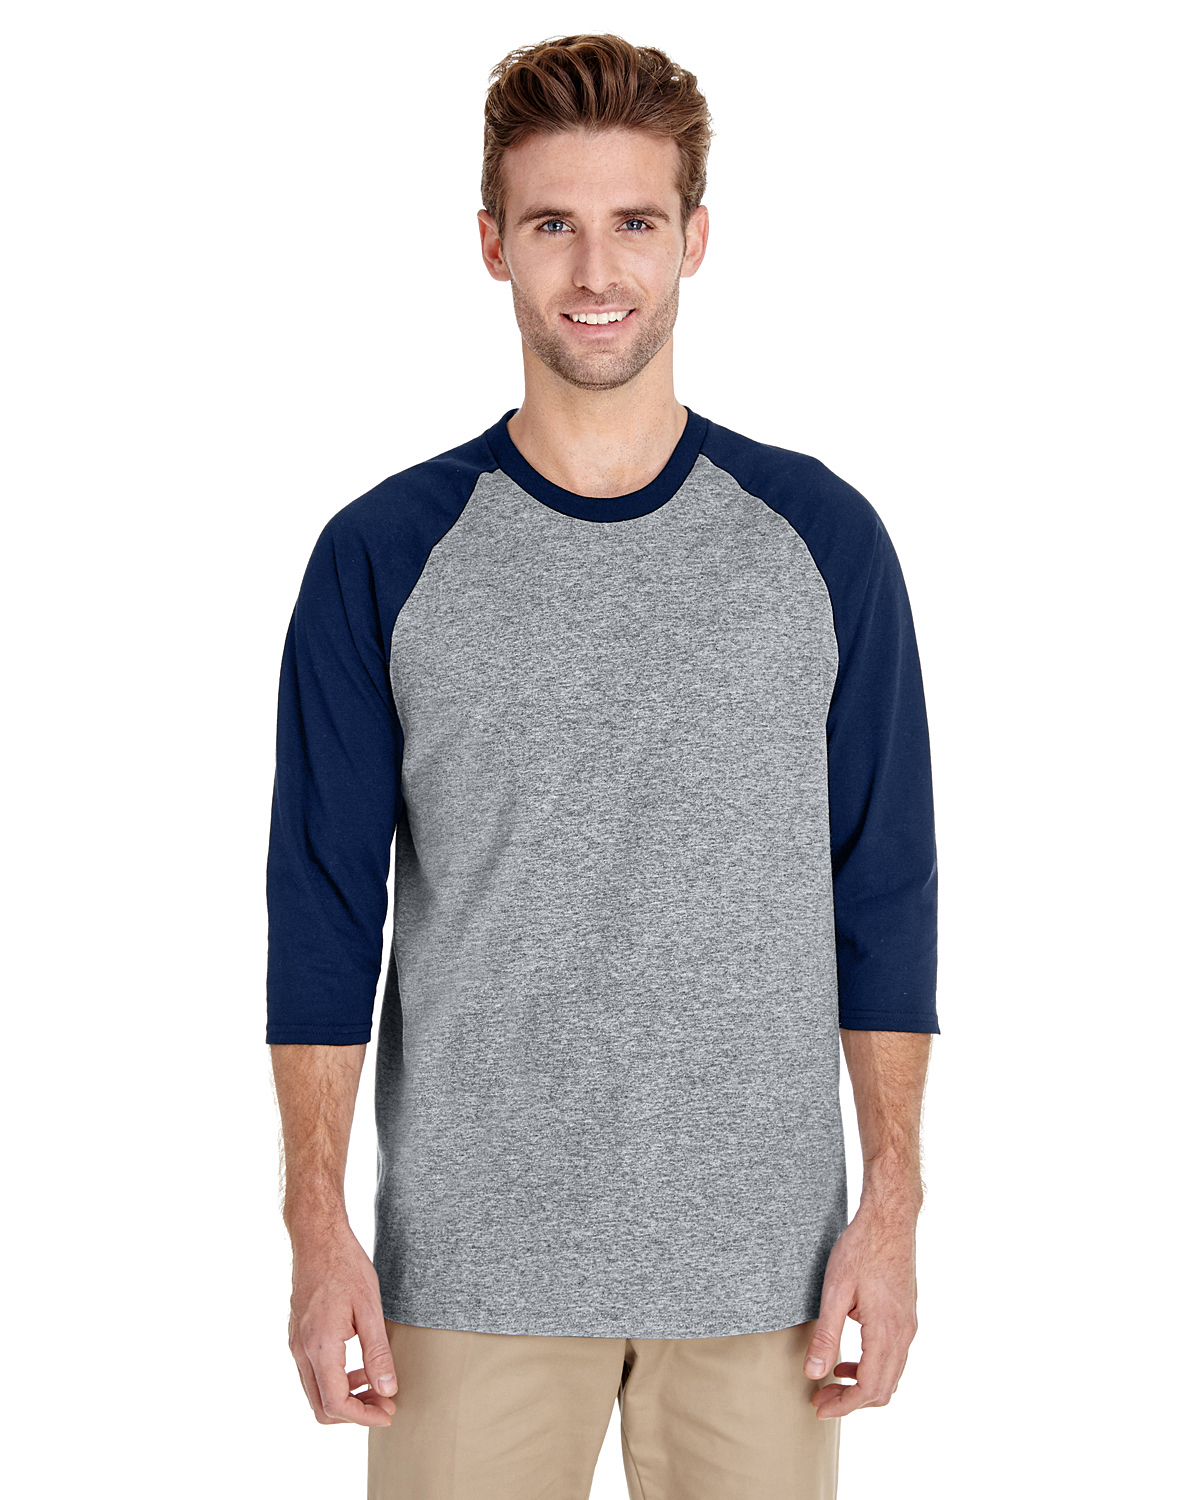 https://images.shirtspace.com/fullsize/FnpDZo0vy7A56Cts4wK2cg%3D%3D/146784/4979-gildan-g570-heavy-cotton-3-4-sleeve-raglan-t-shirt-front-sport-gray-navy.jpg